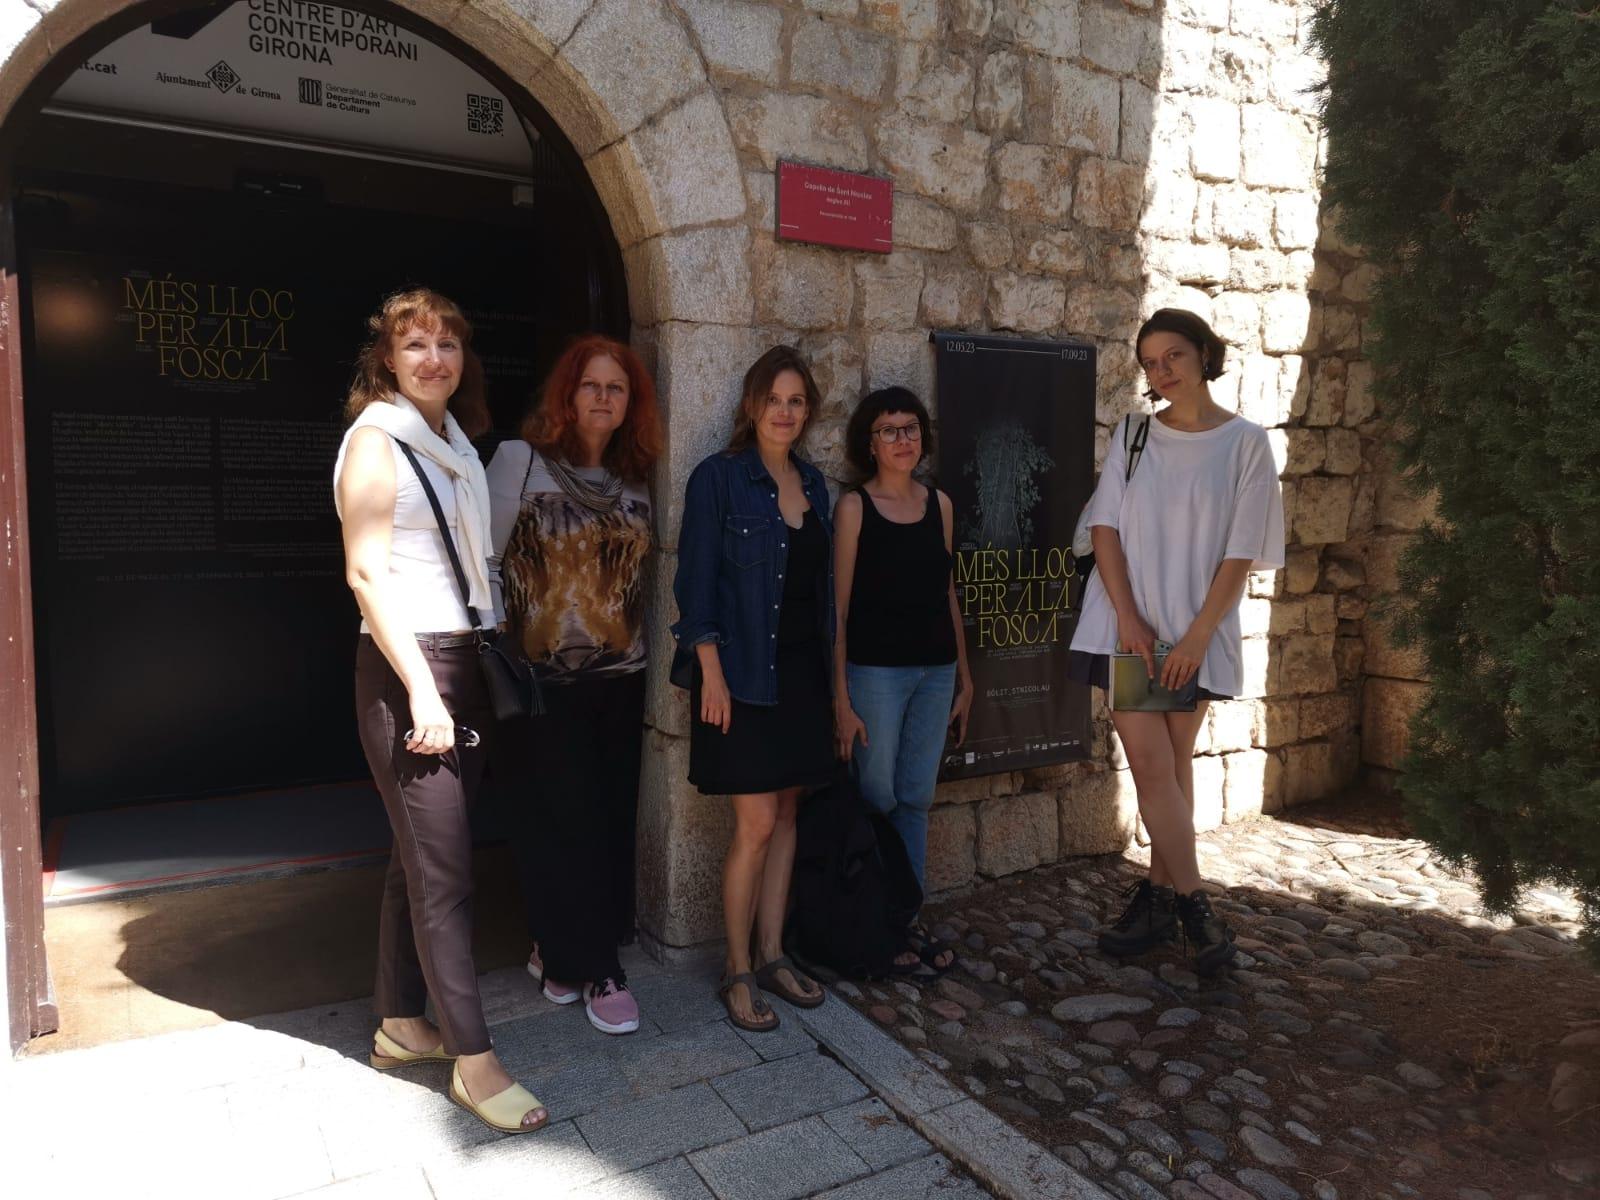 Les ucraïneses visiten el Bòlit de Girona